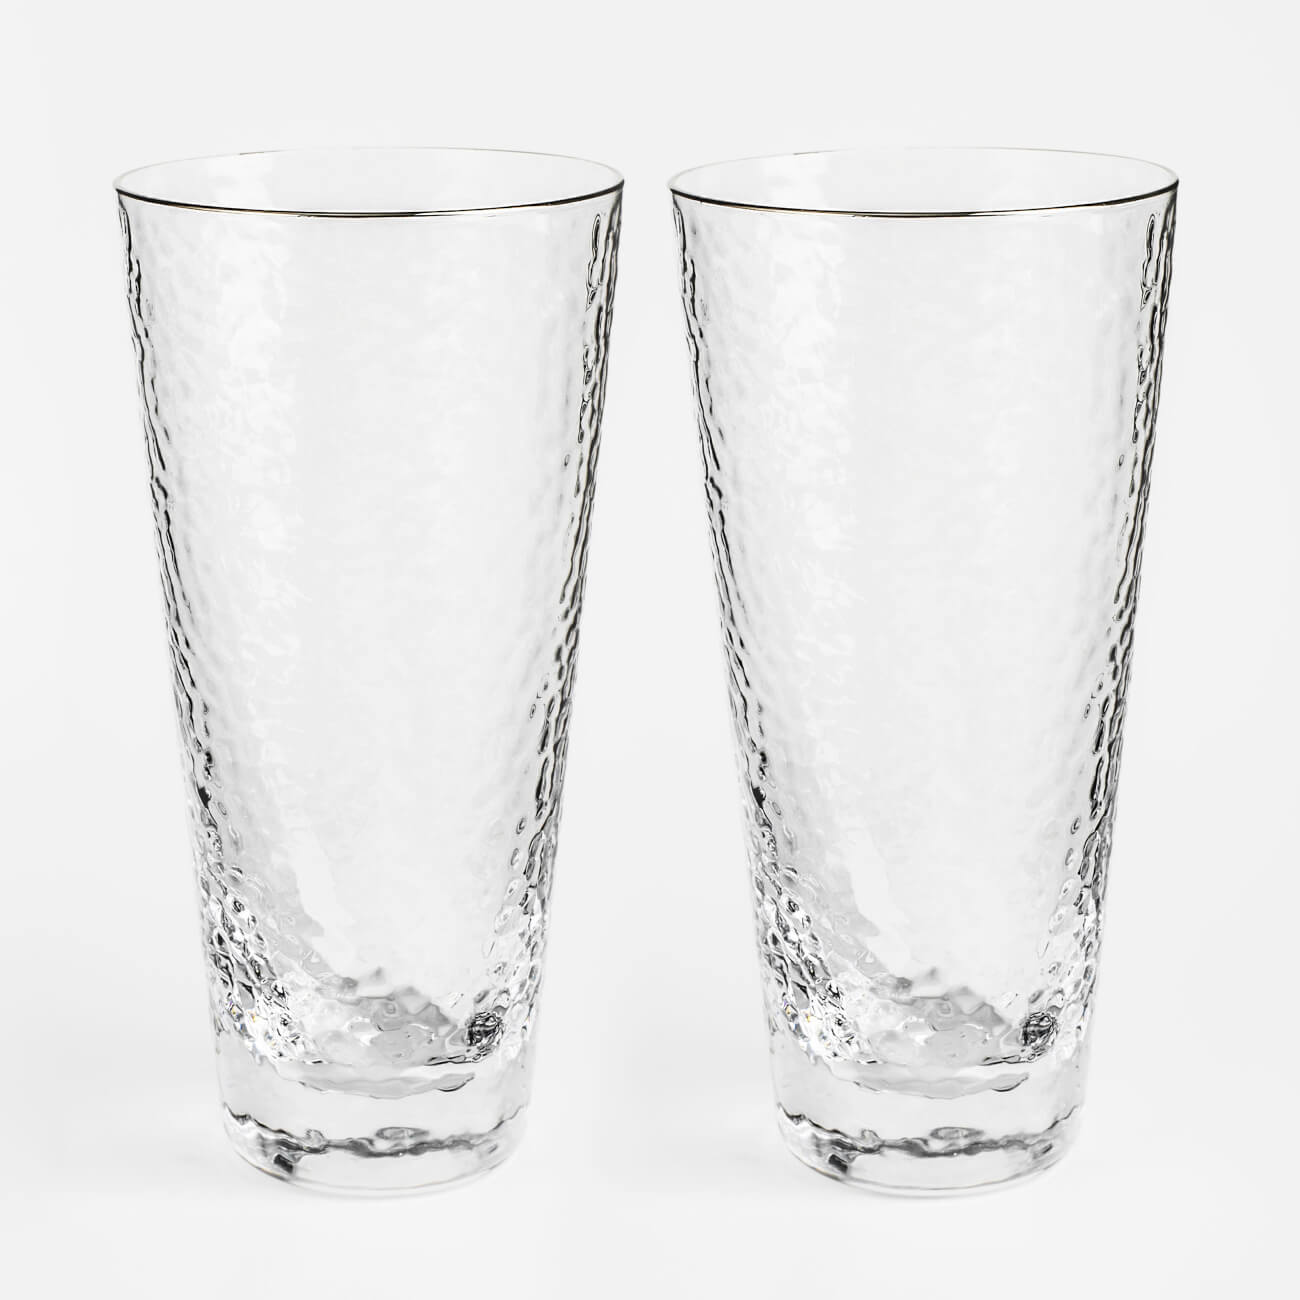 Стакан, 450 мл, 2 шт, стекло, с серебристым кантом, Ripply silver бокал для шампанского 275 мл 2 шт стекло перламутровый ripply polar